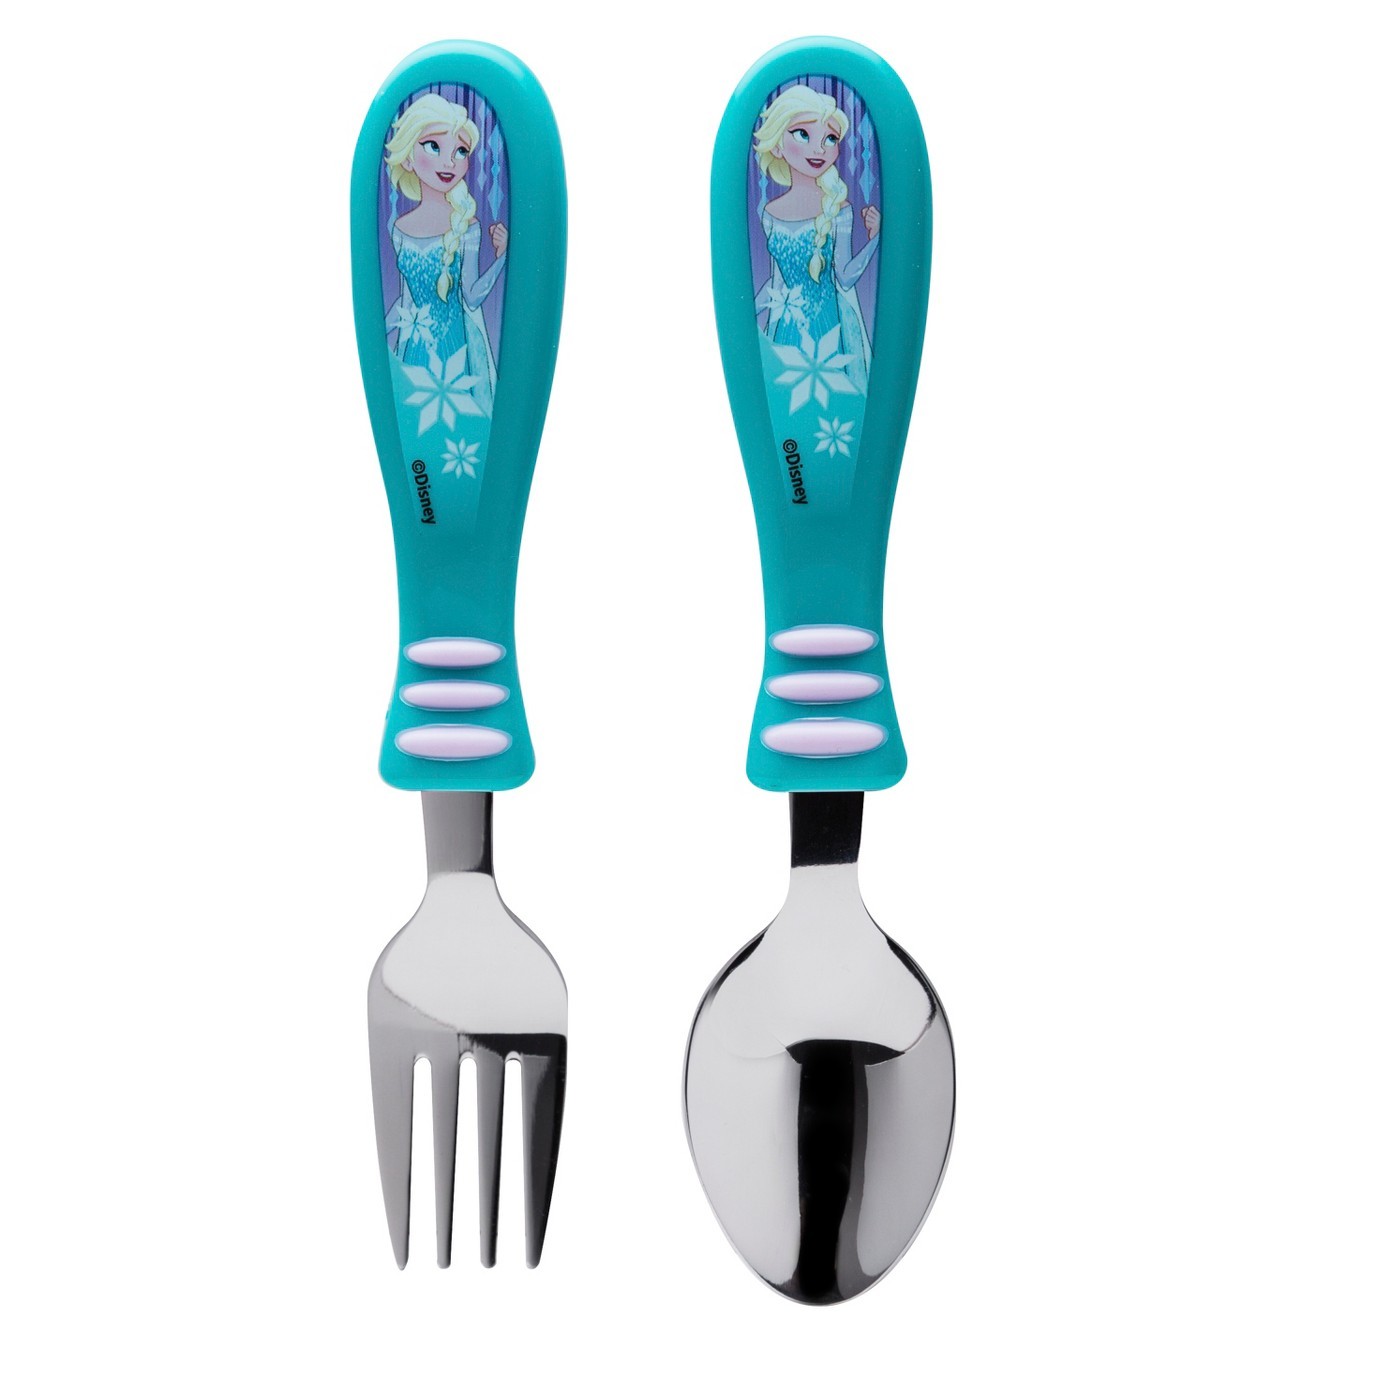 Folk and Spoon Frozen II Cutlery 